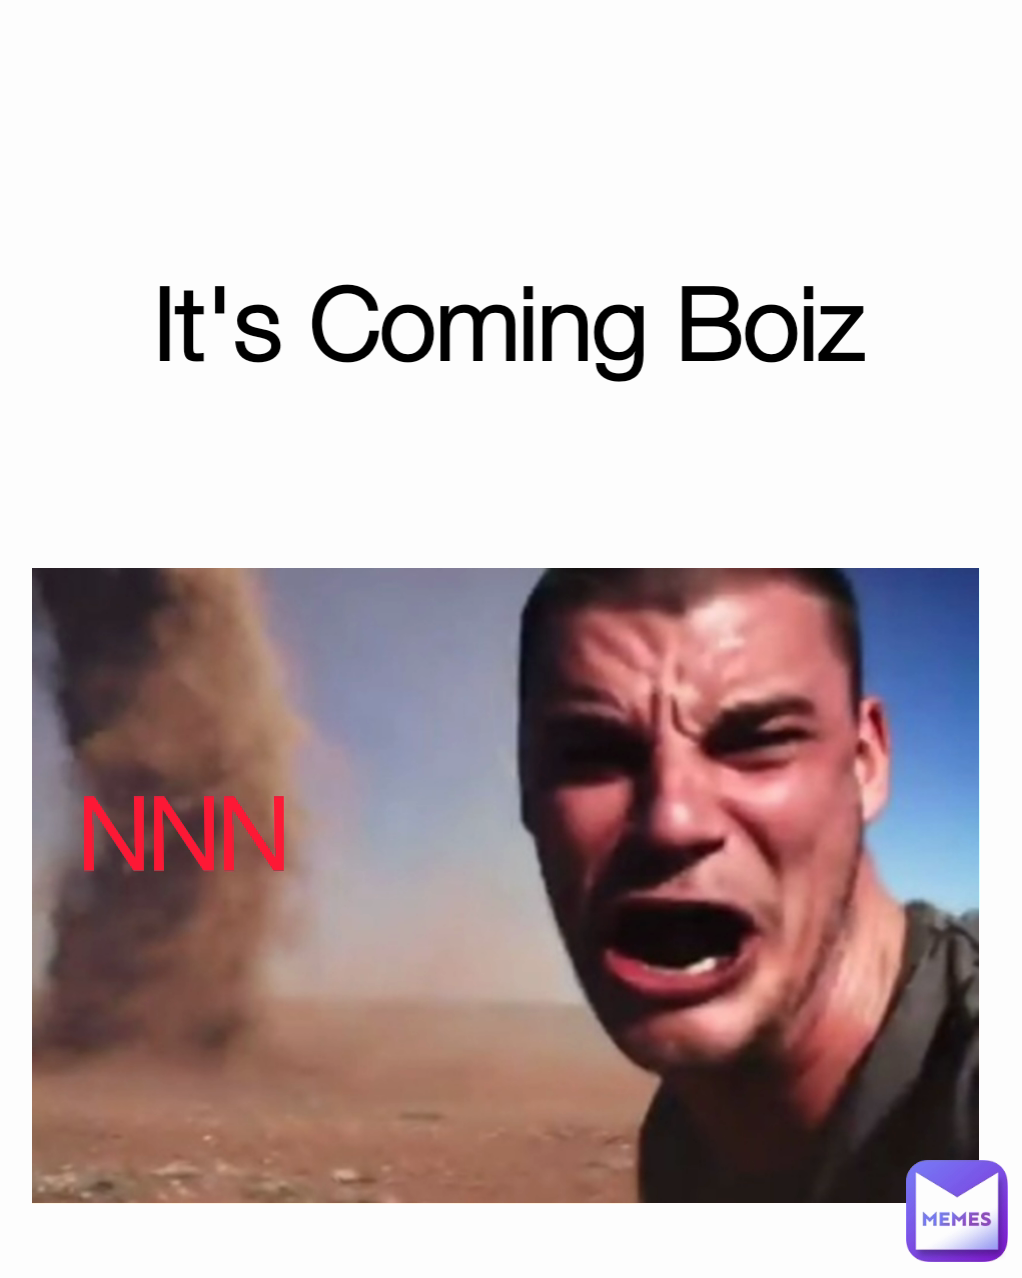 NNN It's Coming Boiz